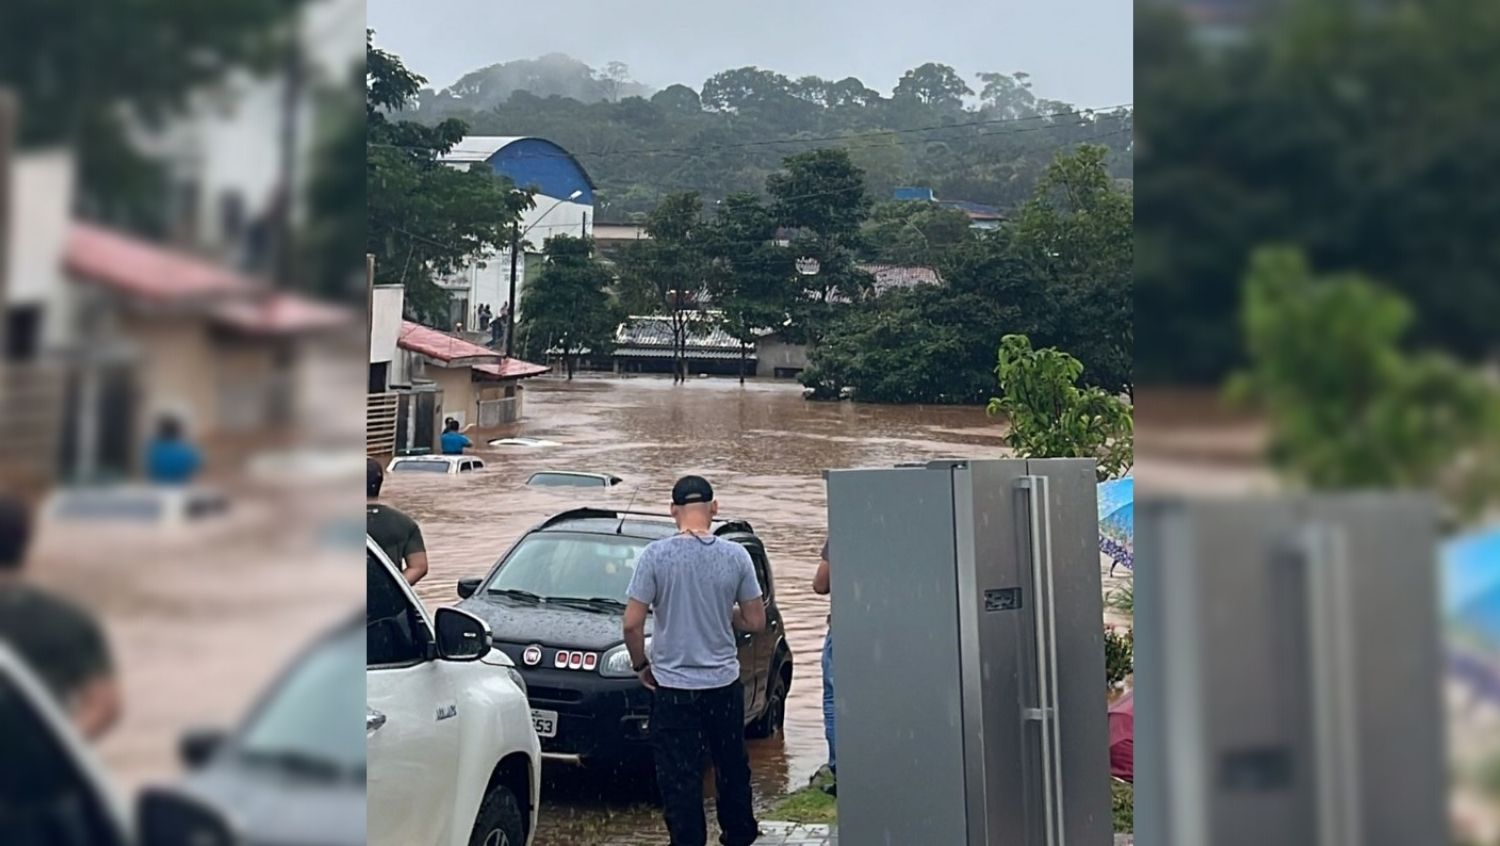 AGUACEIRO: Ouro Preto está embaixo d’água após fortes chuvas